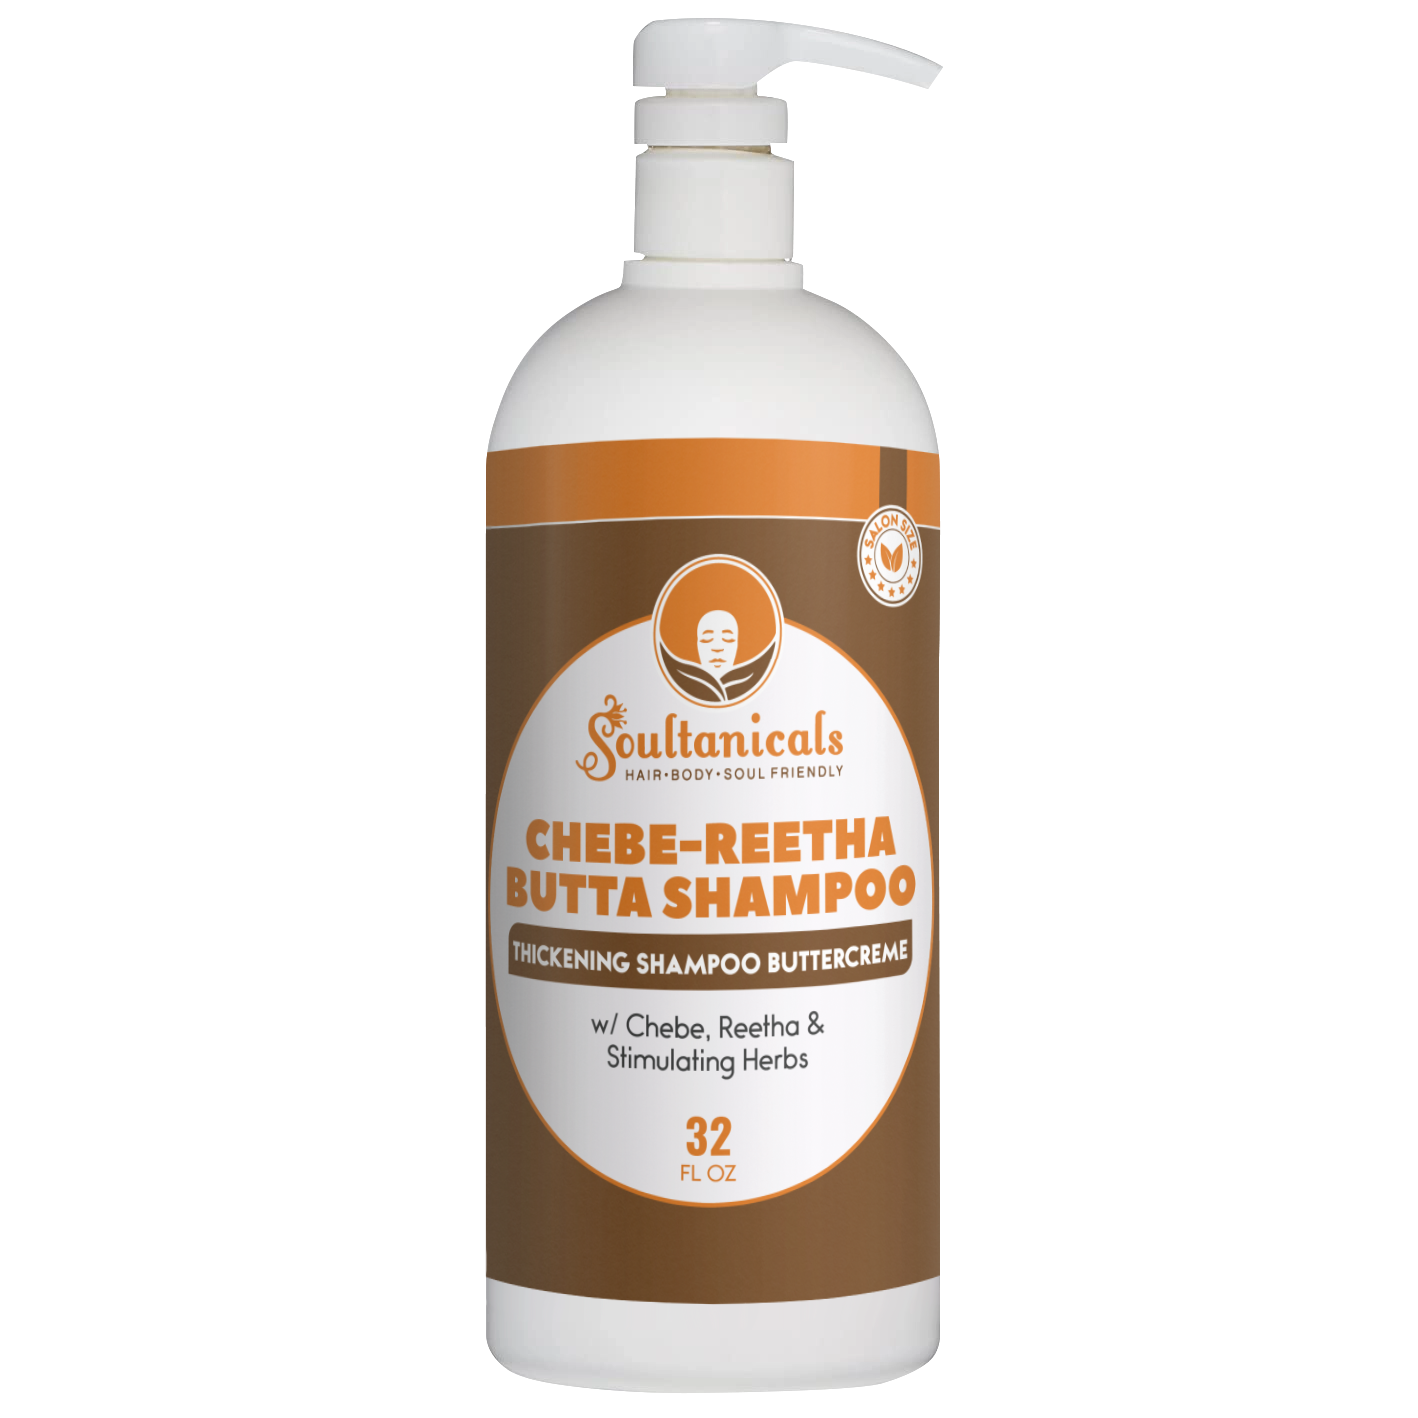 Chebe-Reetha Butta Shampoo SALON SIZE (Ships by 5/24)